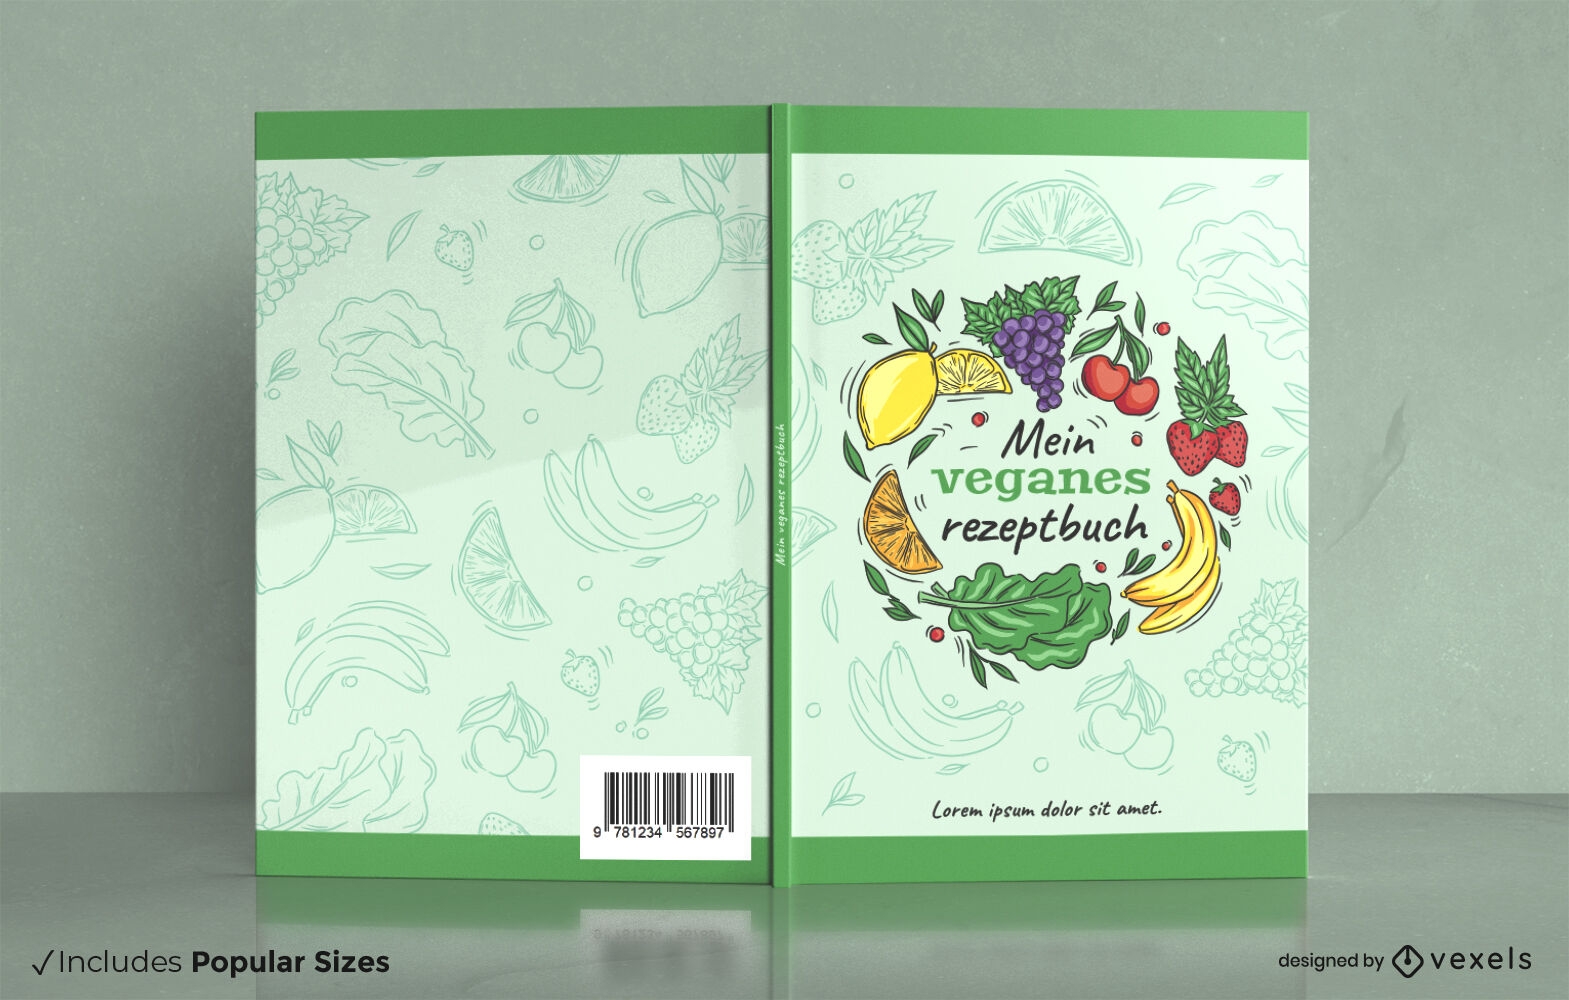 Vegan cookbook cover design